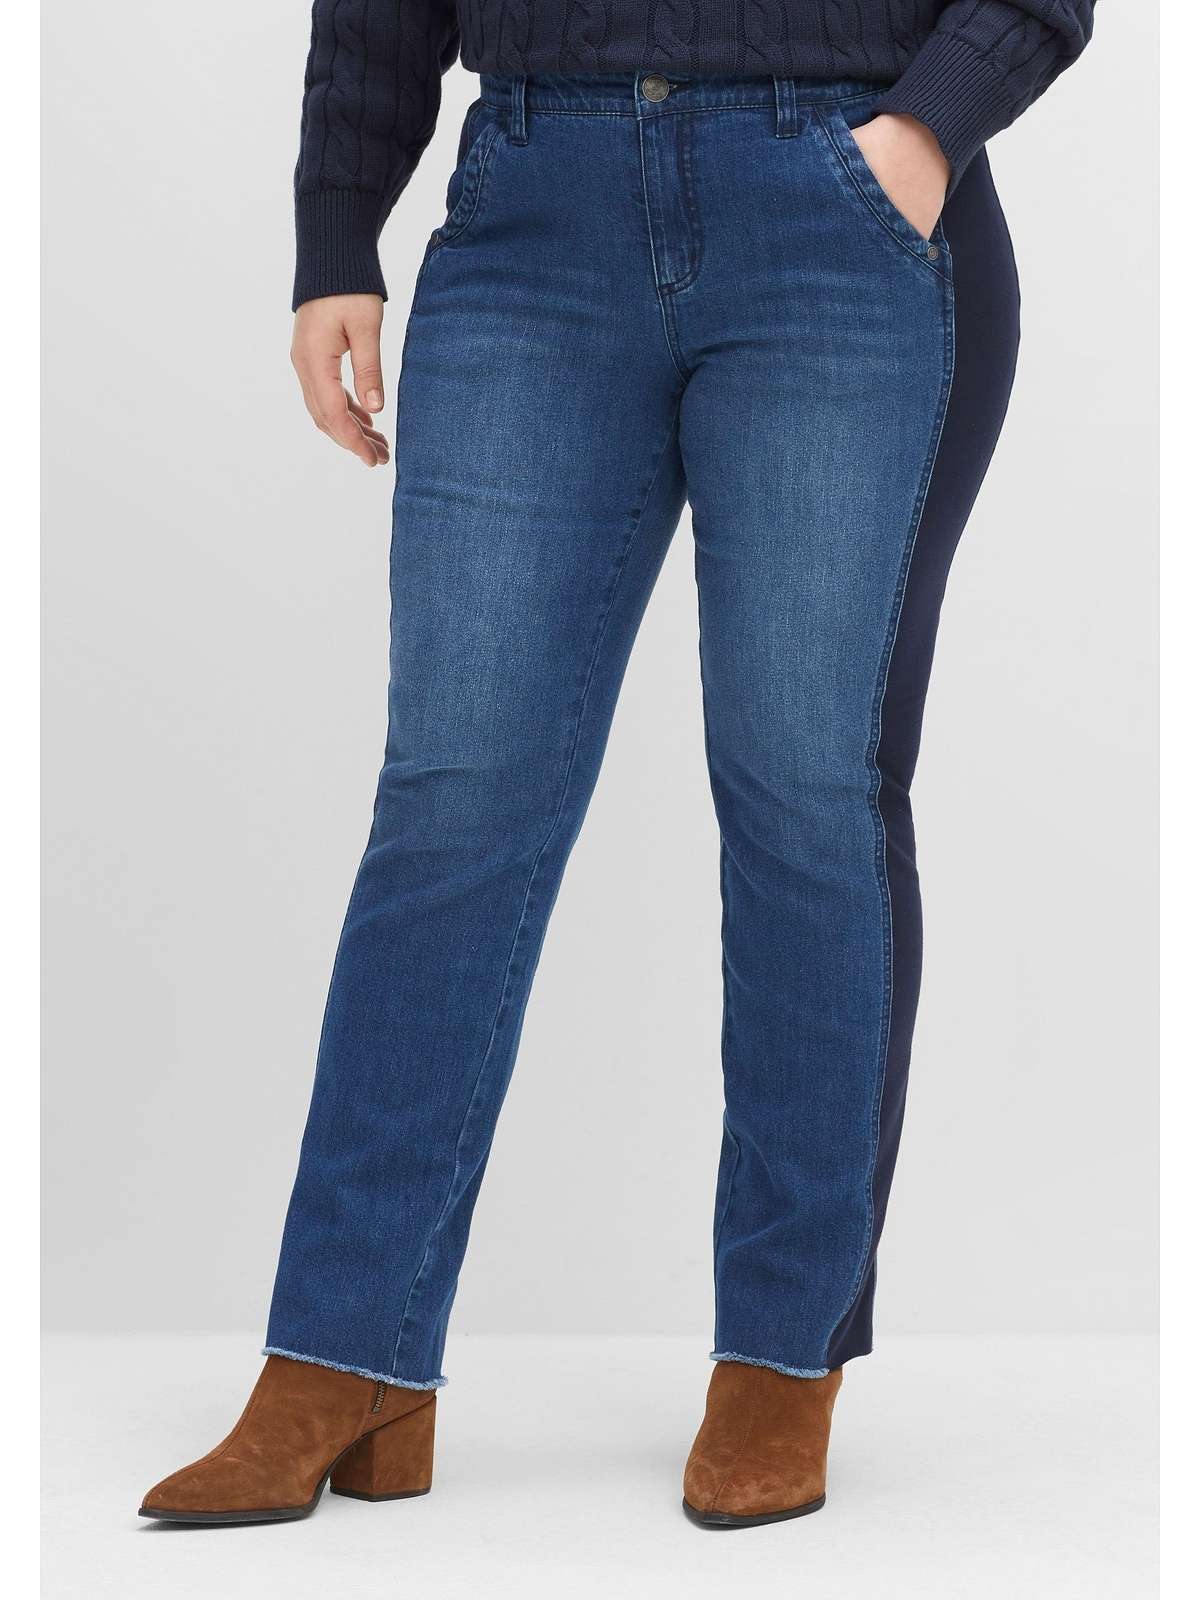 Прямые джинсы с трикотажными вставками по бокам.